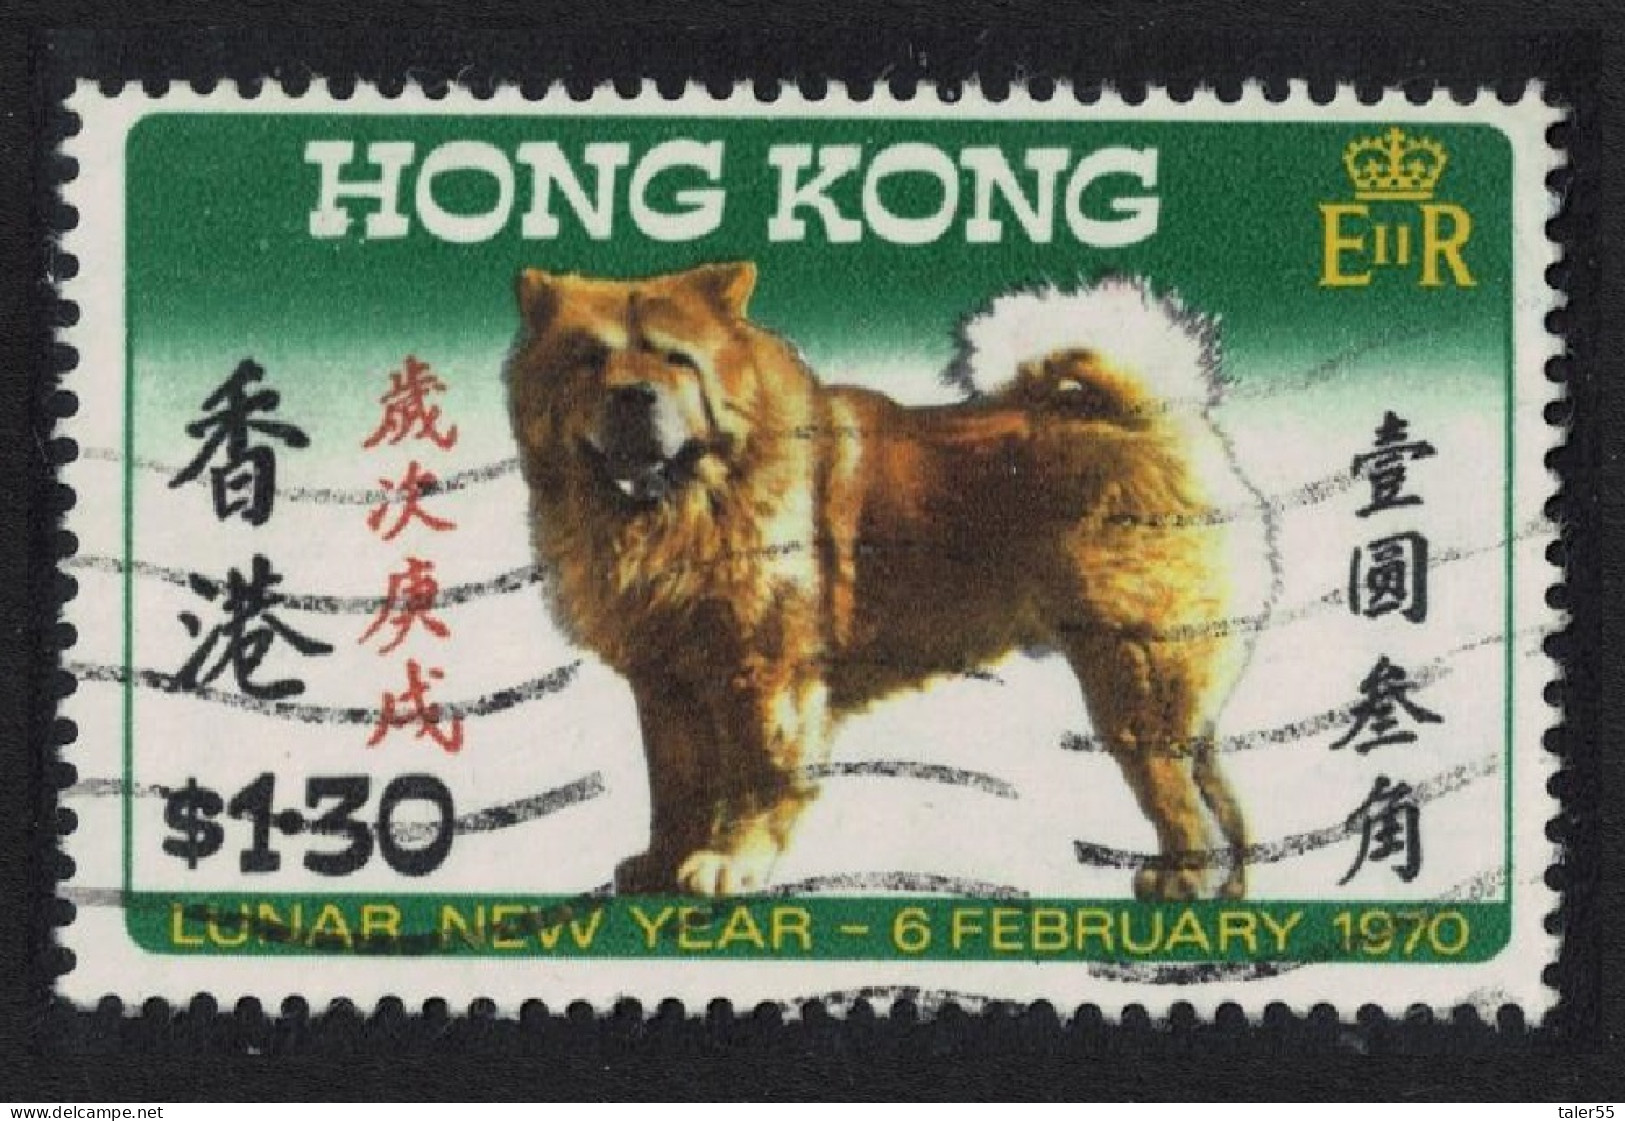 Hong Kong Chinese New Year. Year Of The Dog $1.30 1970 Canc SG#262 - Usados